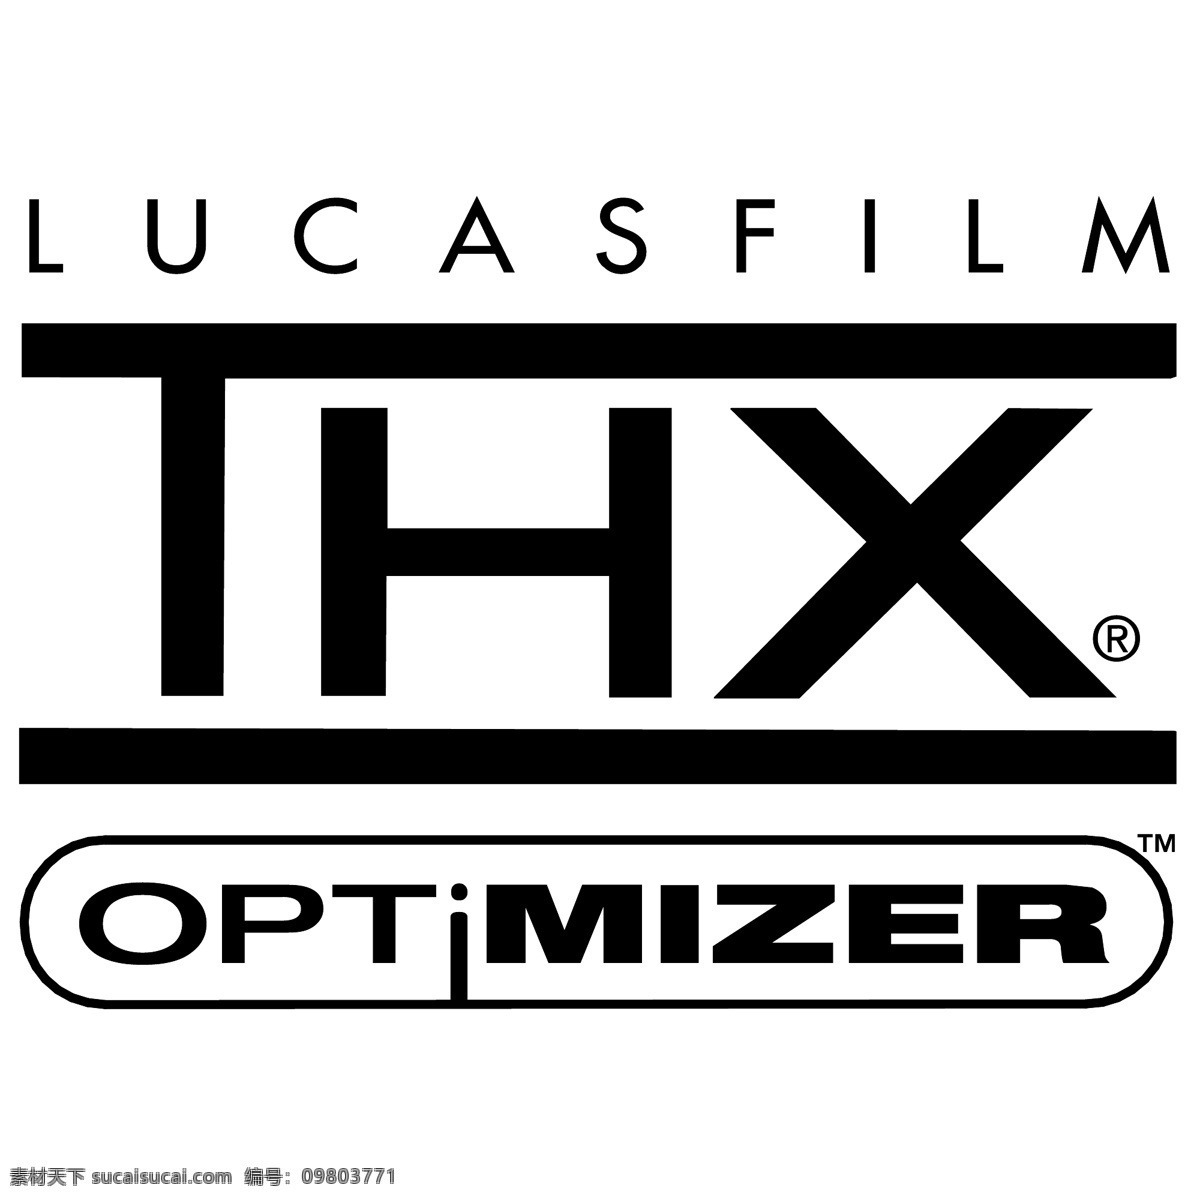 谢谢 卢卡斯 影业 免费 thx 标识 psd源文件 logo设计